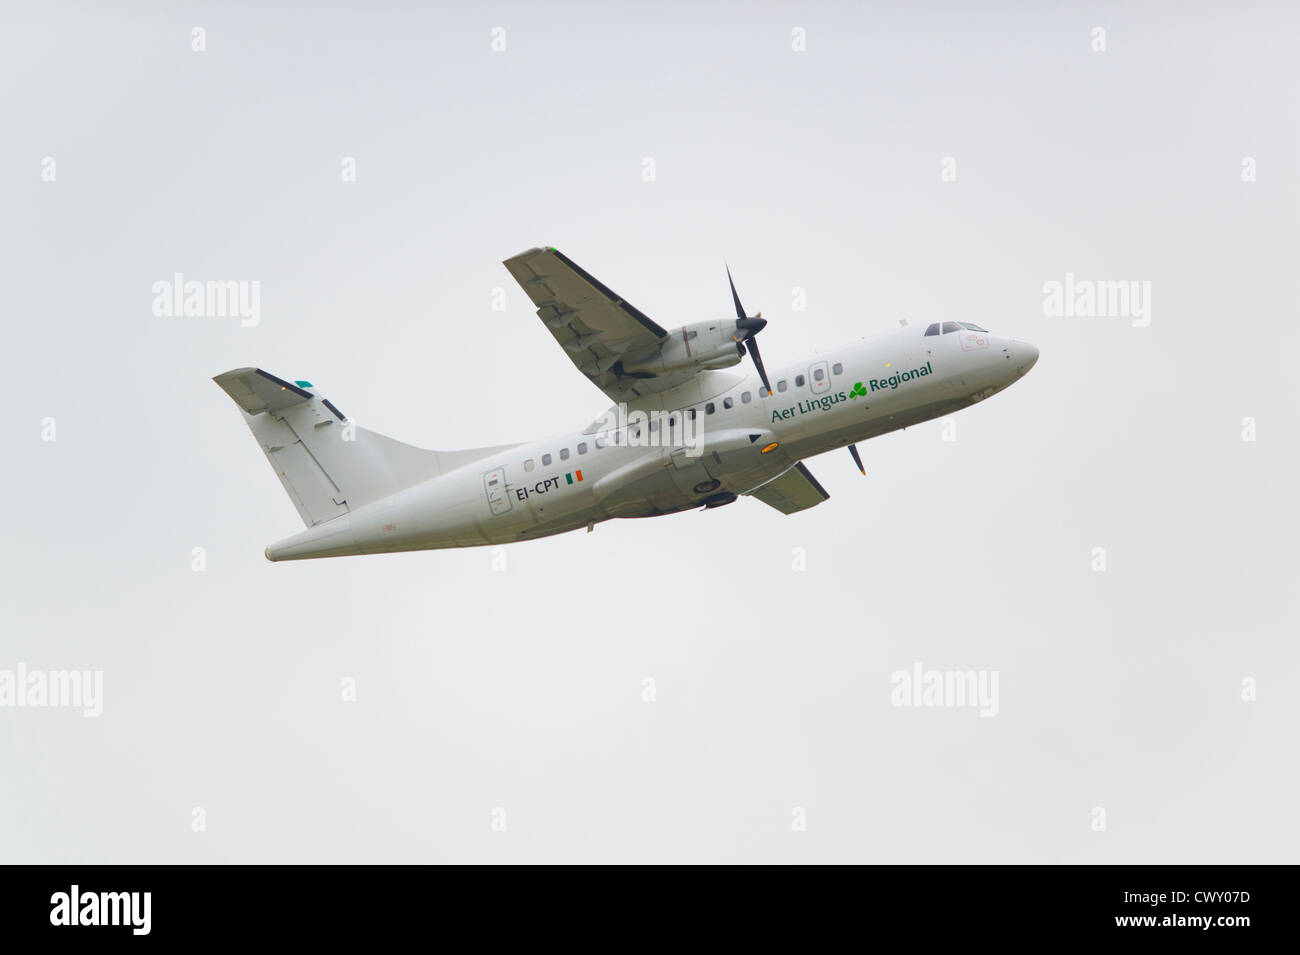 Un Aer Lingus Regional ATR 42 decollo dall'Aeroporto Internazionale di Manchester (solo uso editoriale) Foto Stock